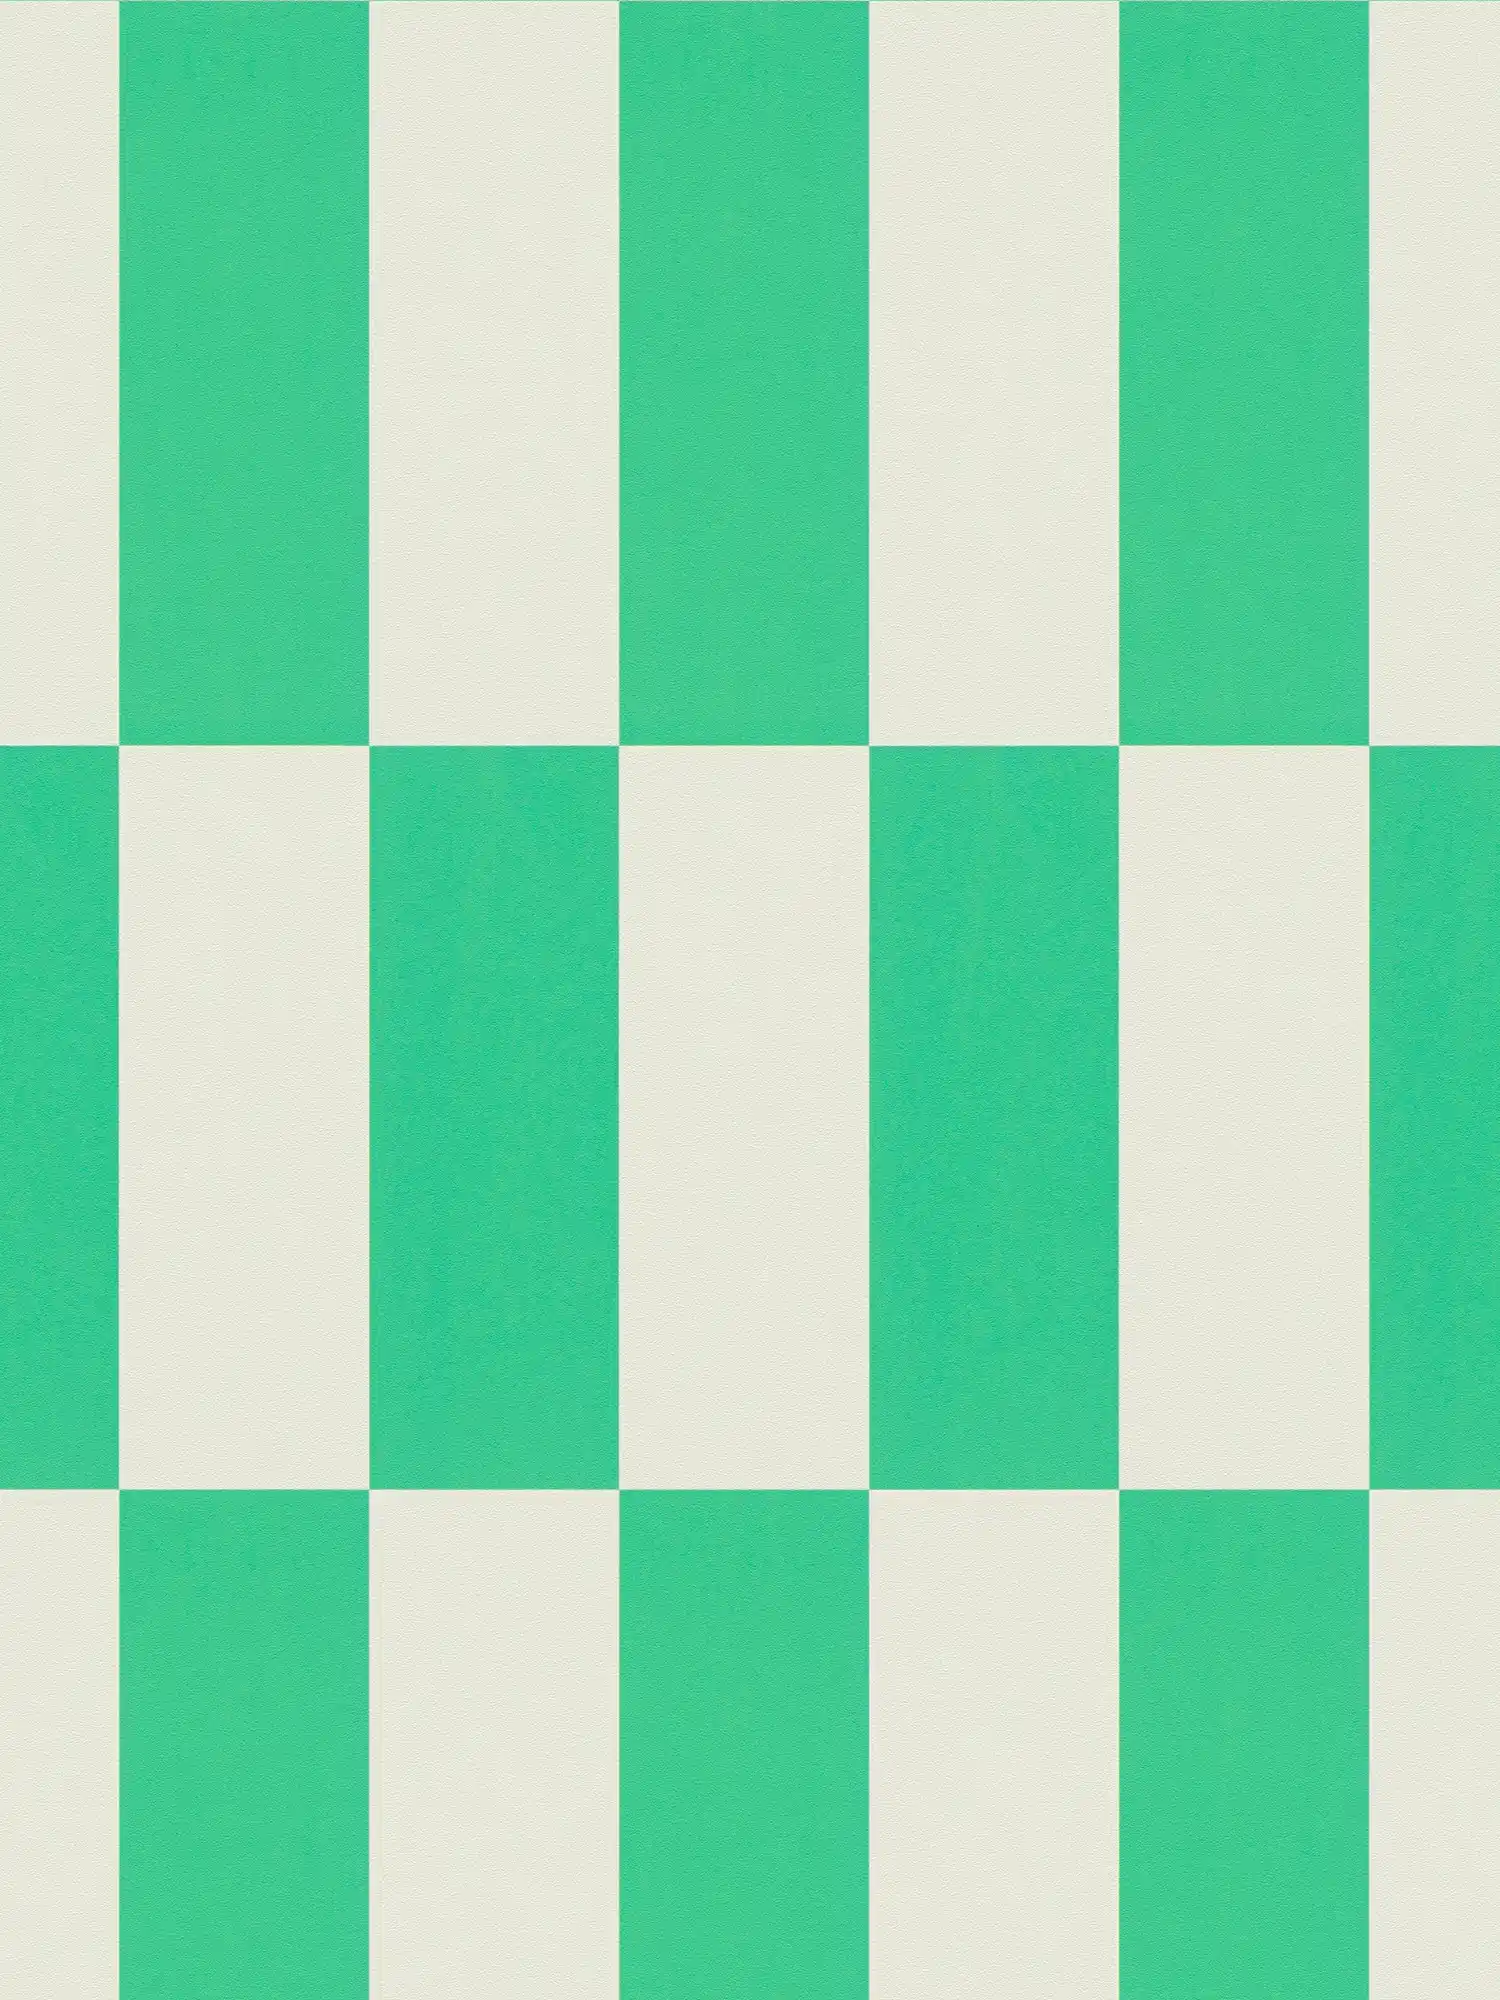 Carta da parati con motivo grafico a quadretti - verde, bianco
